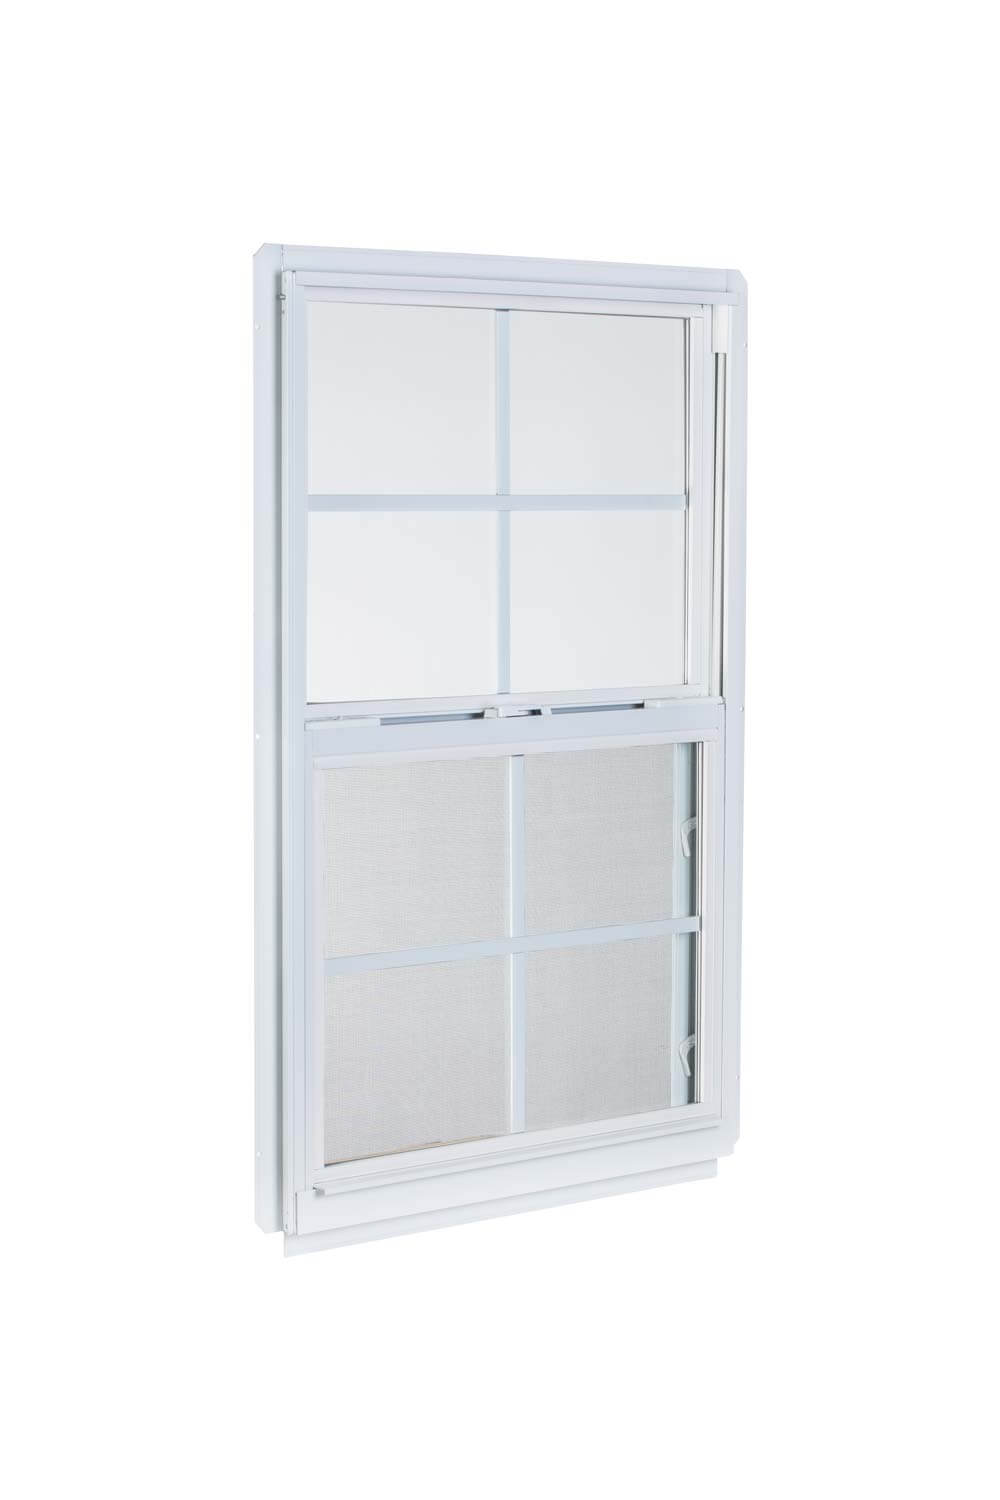 2' x 4' White Aluminum Insulated Window (4/4 Window Pane Arrangement) Series 96